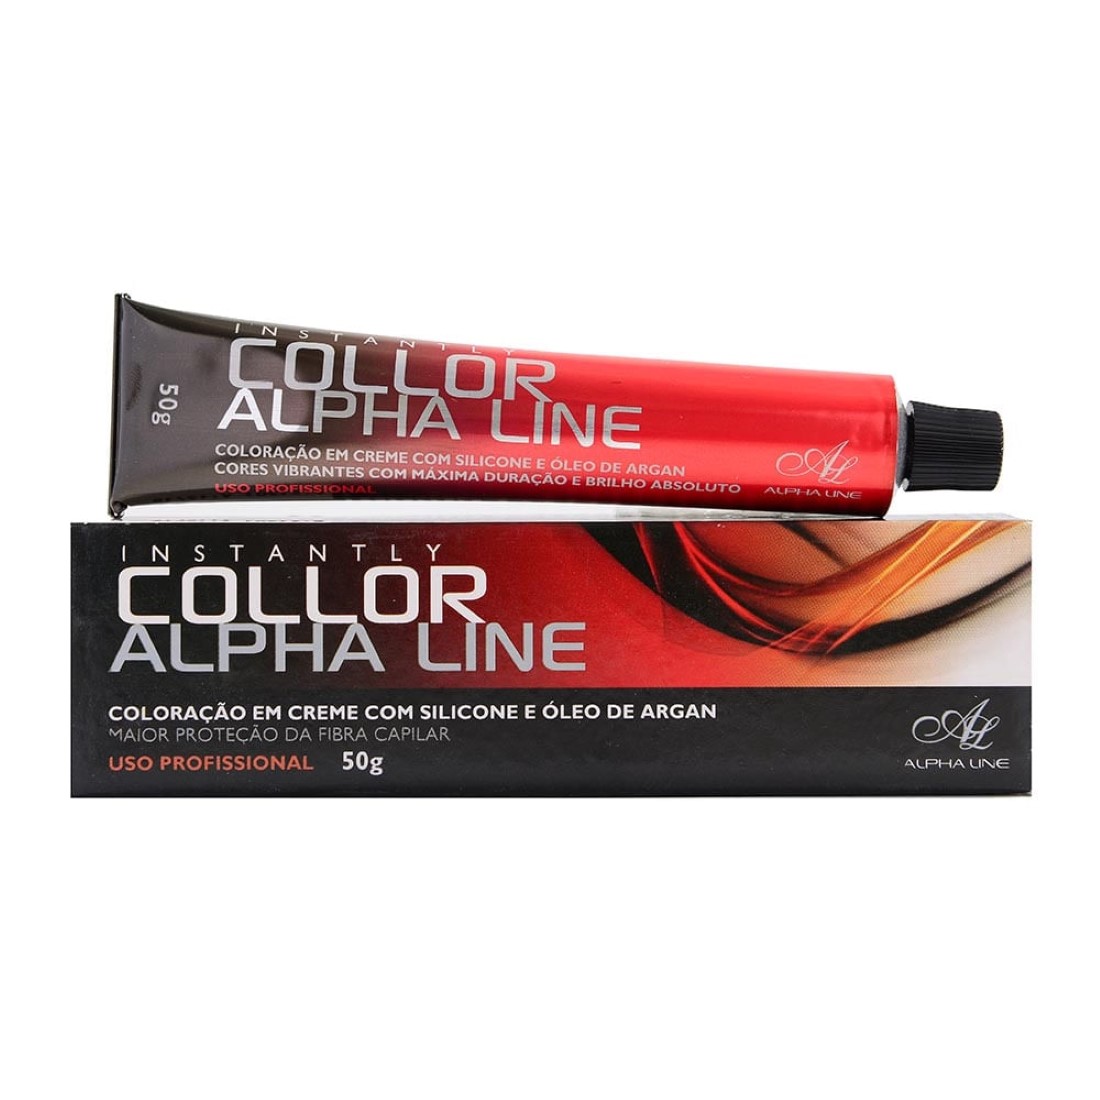 Coloração Instantly Collor Louro Muito Claro 9.0 - Alpha Line